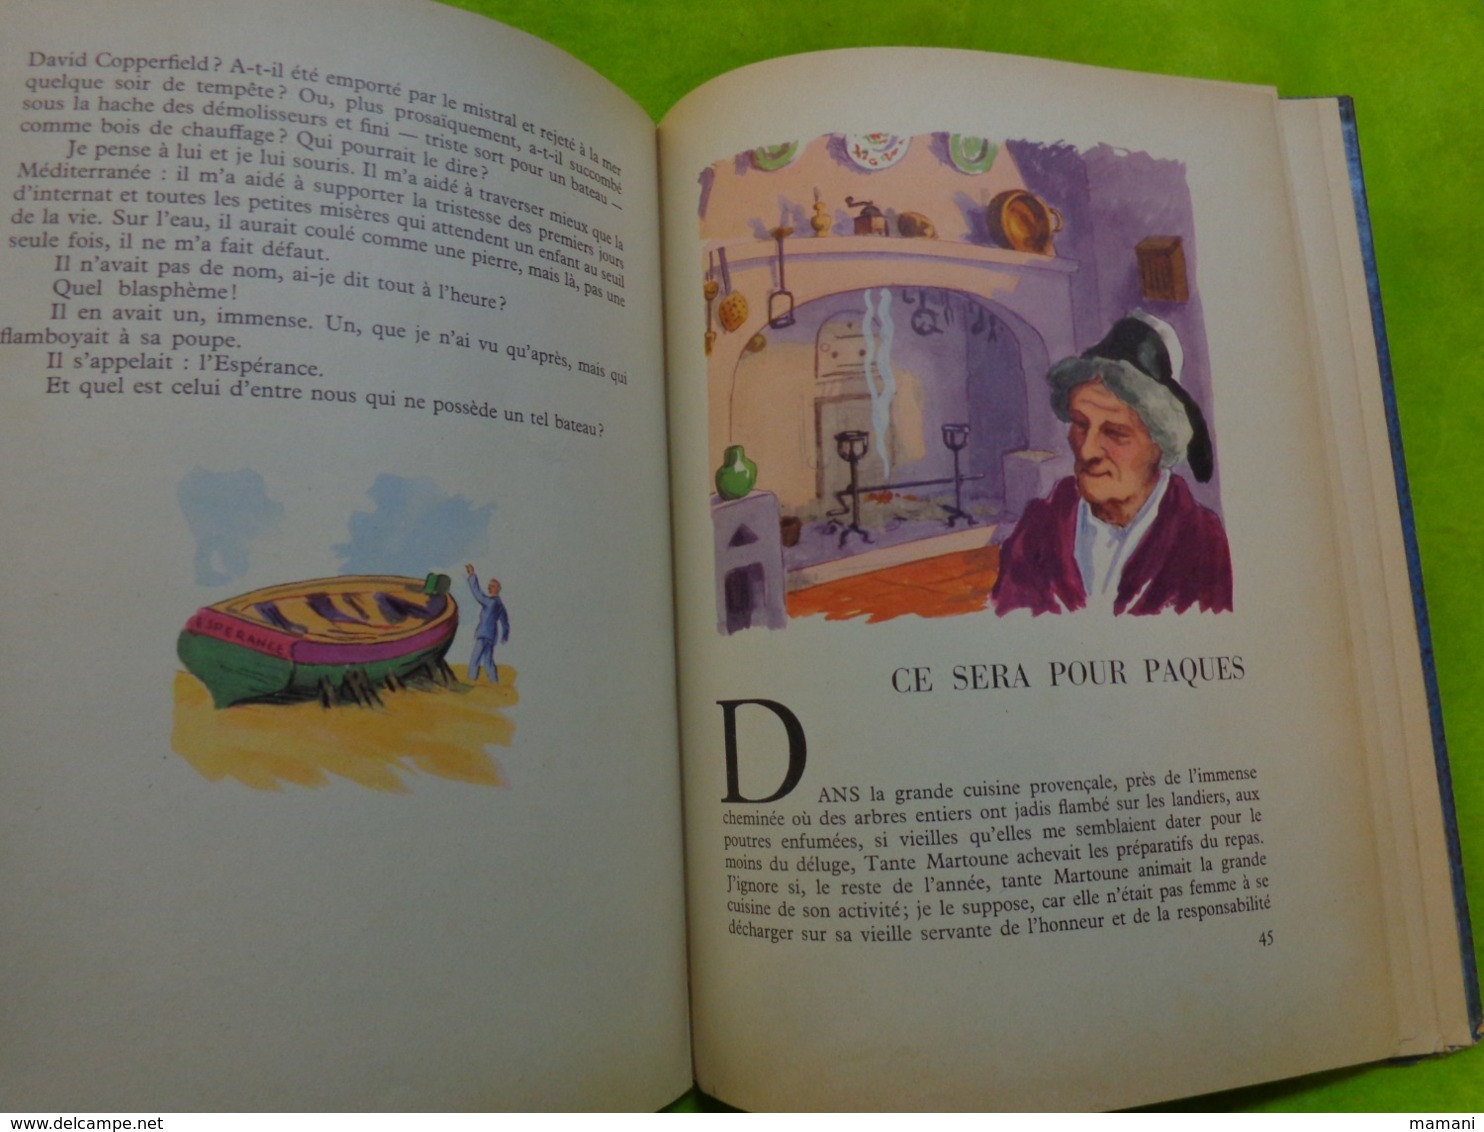 au pays de Magali -charles de richter contes -illustr. pierre rousseau-1953- bibliotheque rouge et bleue